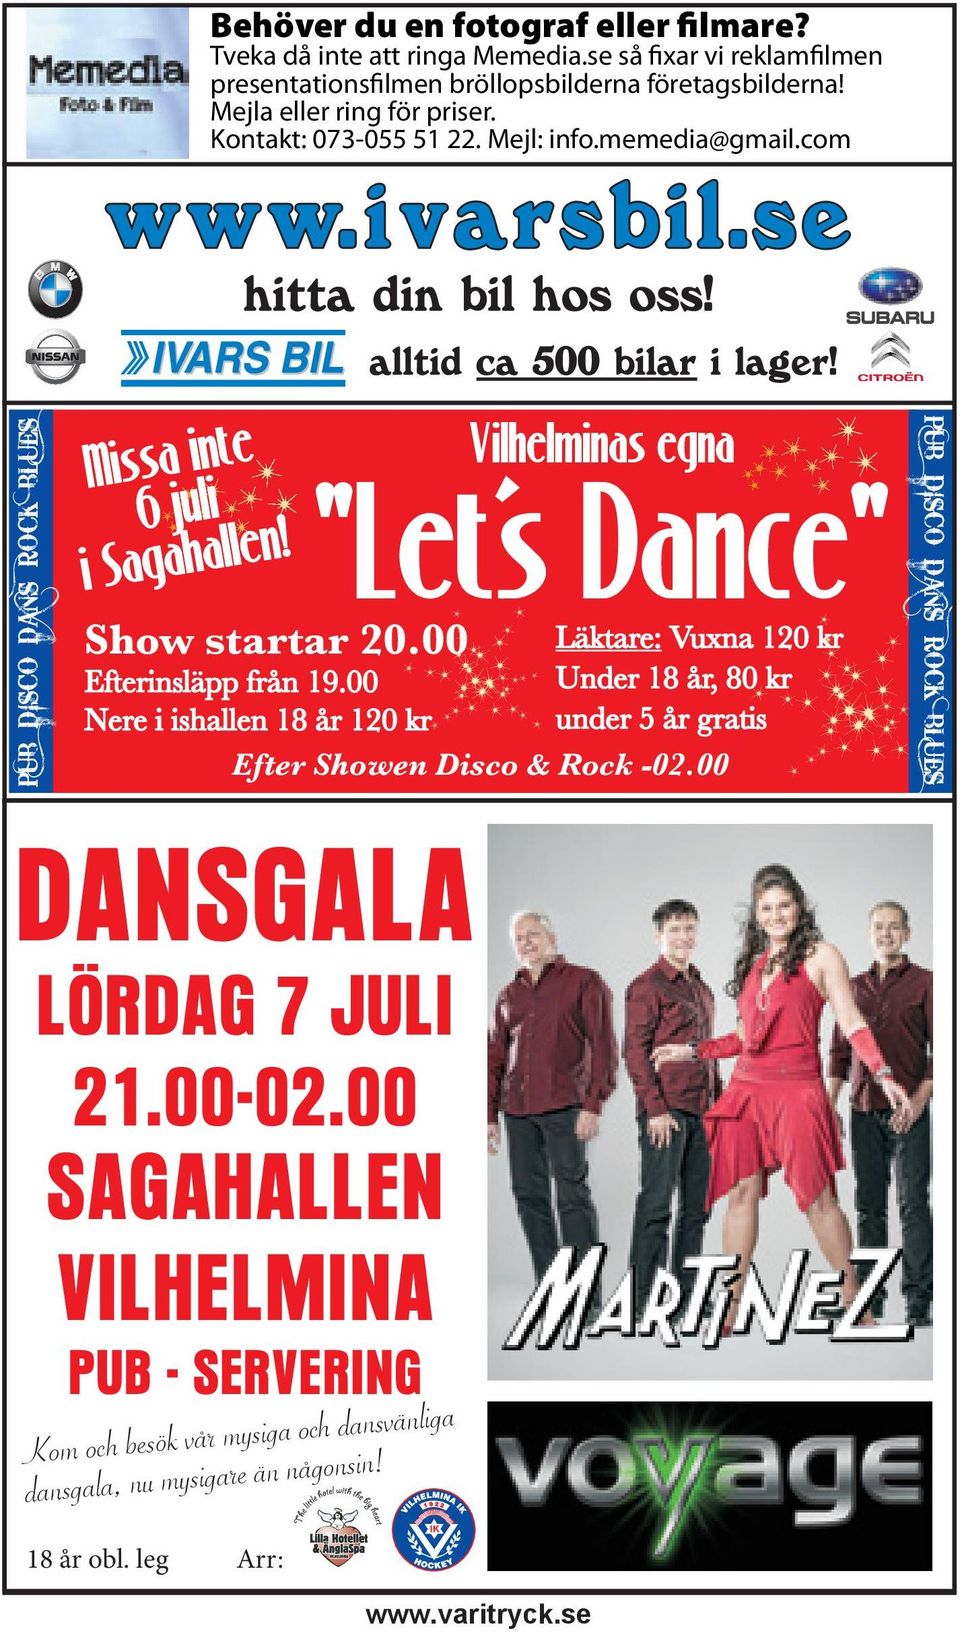 Vilhelminas egna "Let s Dance" Läktare: Vuxna 120 kr Under 18 år, 80 kr under 5 år gratis Show startar 20.00 Efterinsläpp från 19.